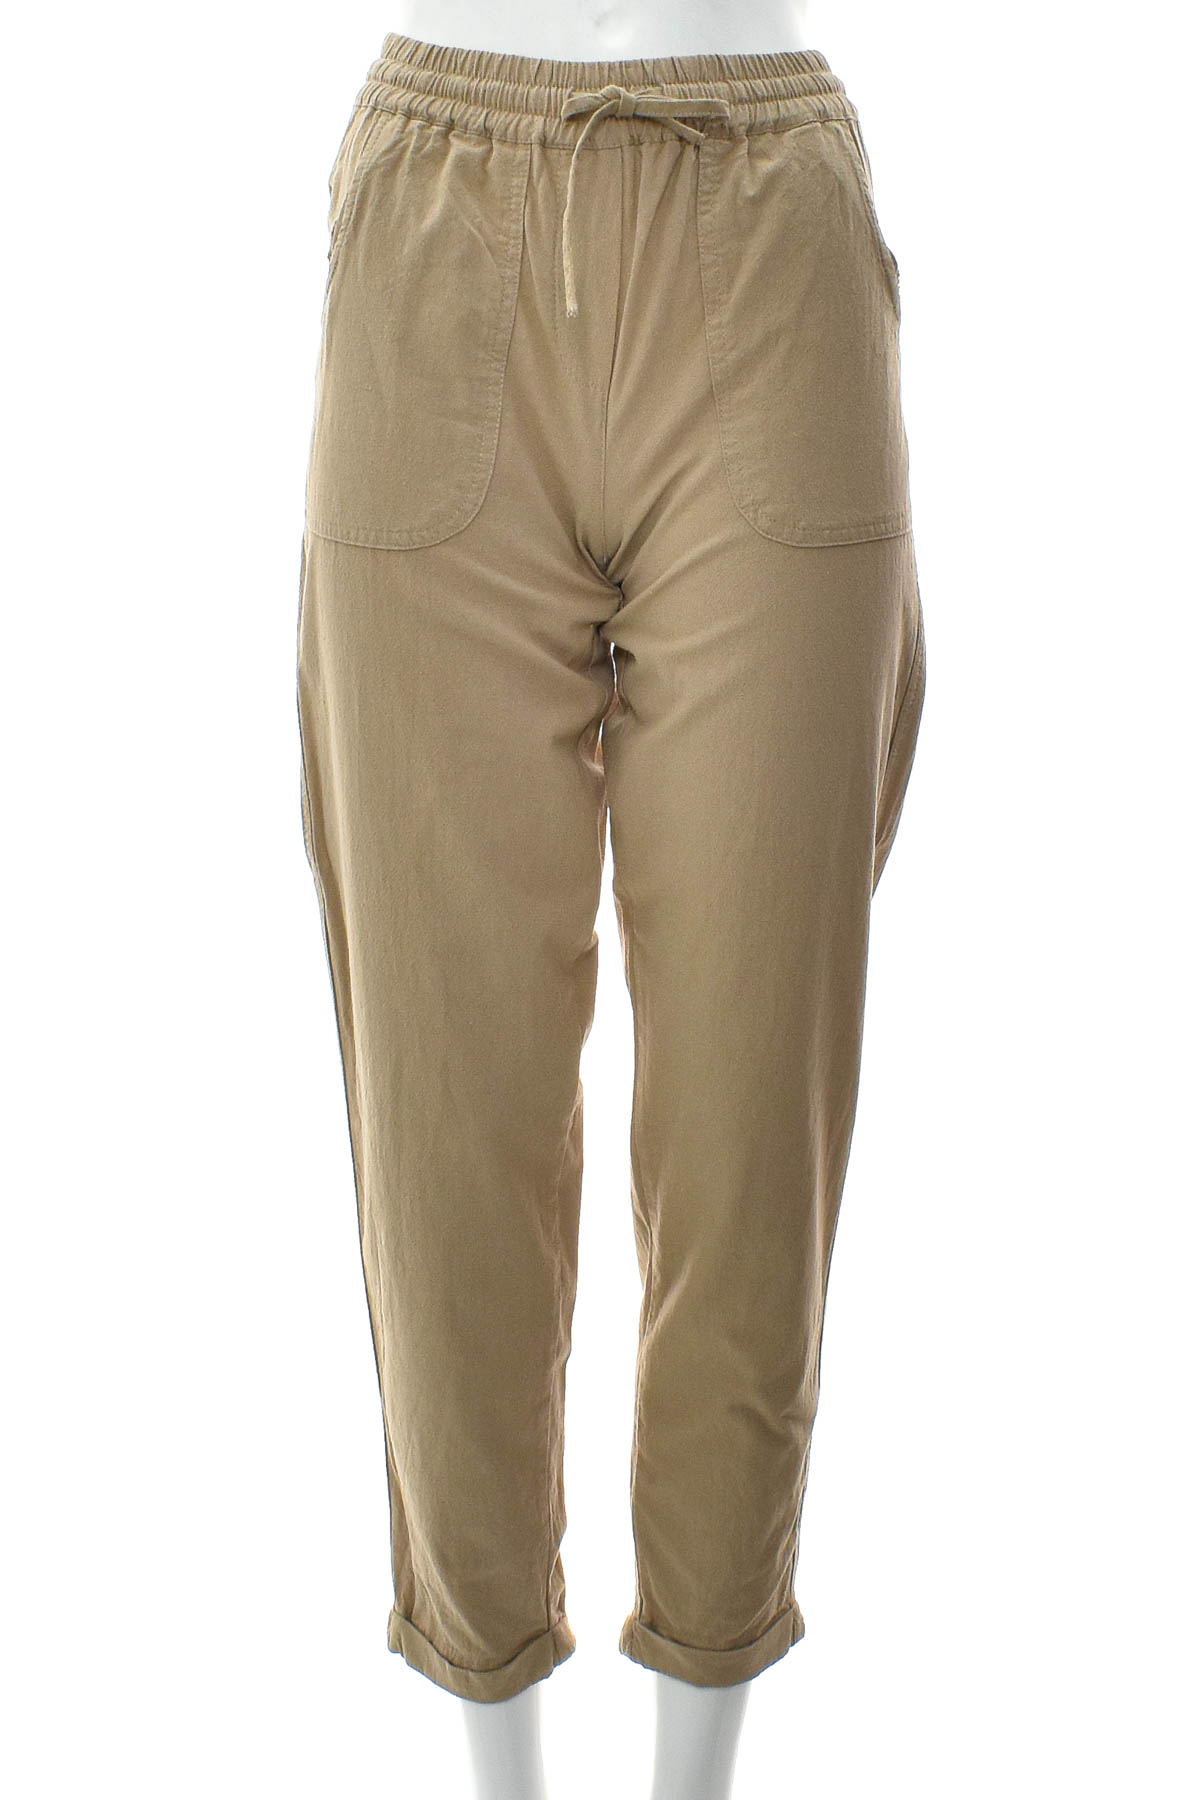 Spodnie damskie - Soya Concept - 0